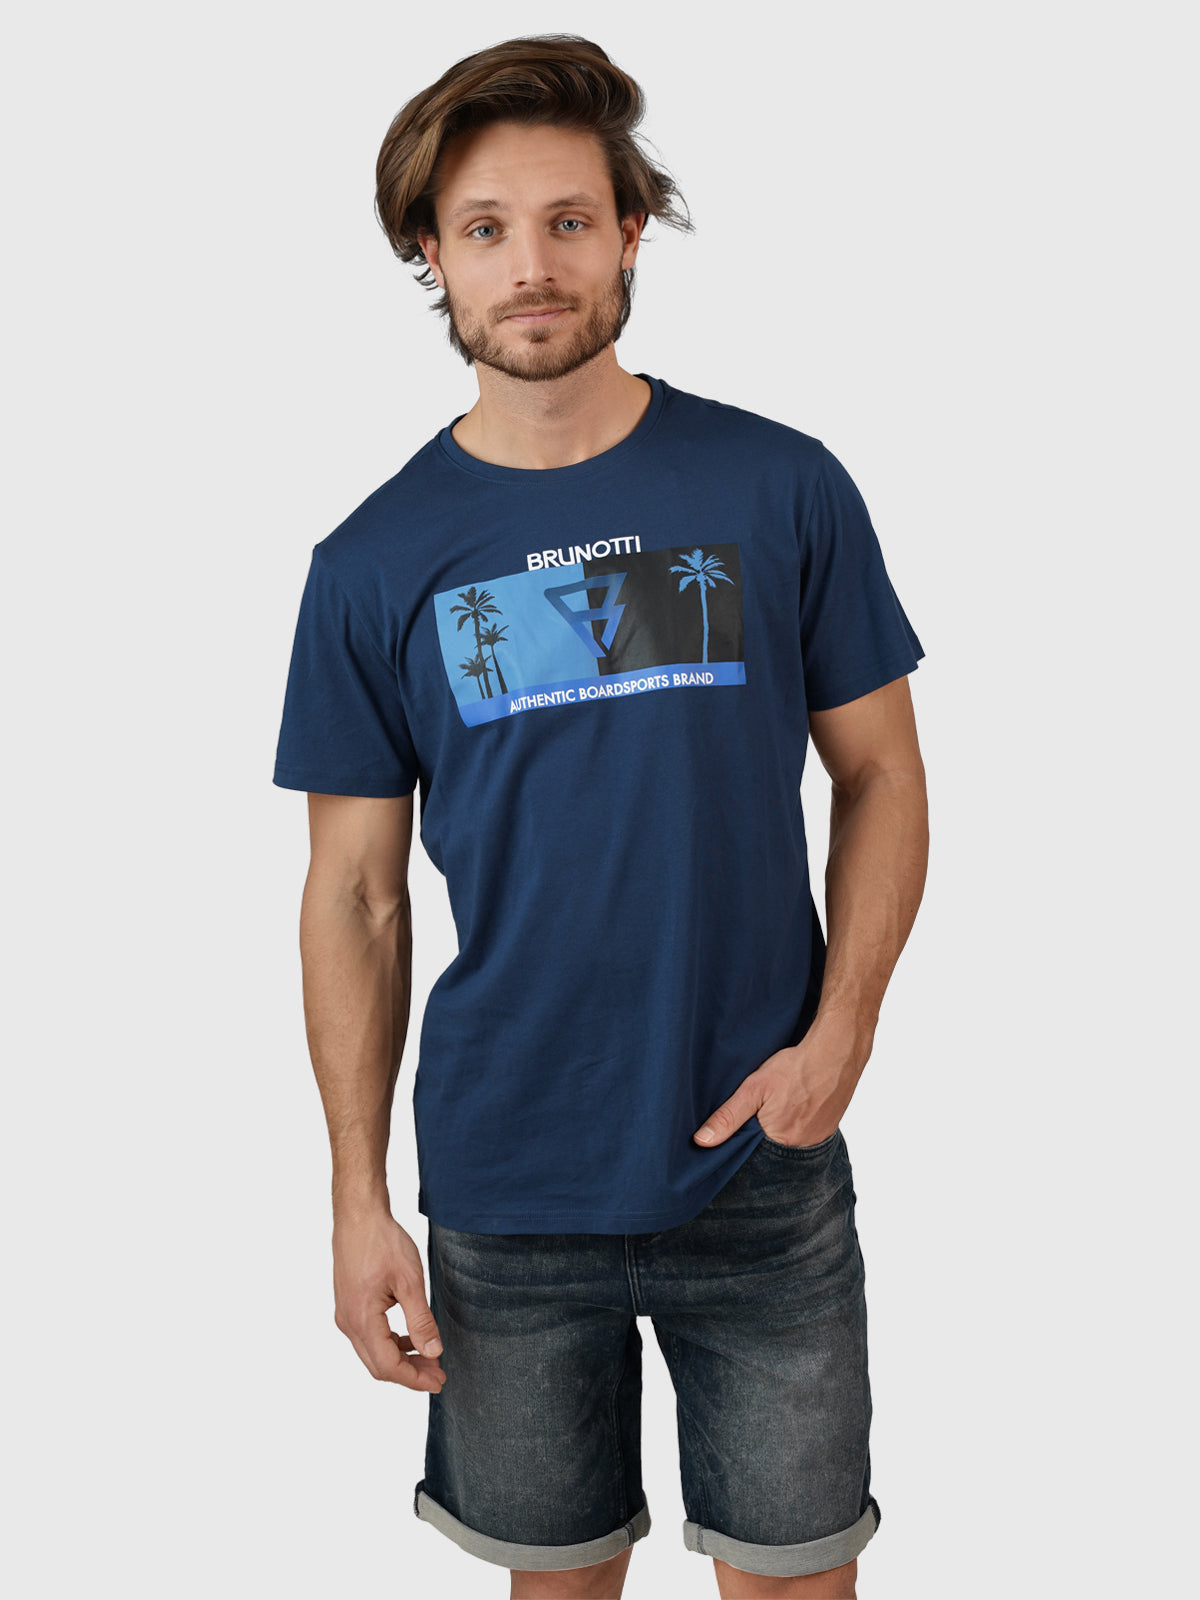 Leeway Herren T-shirt | Blau